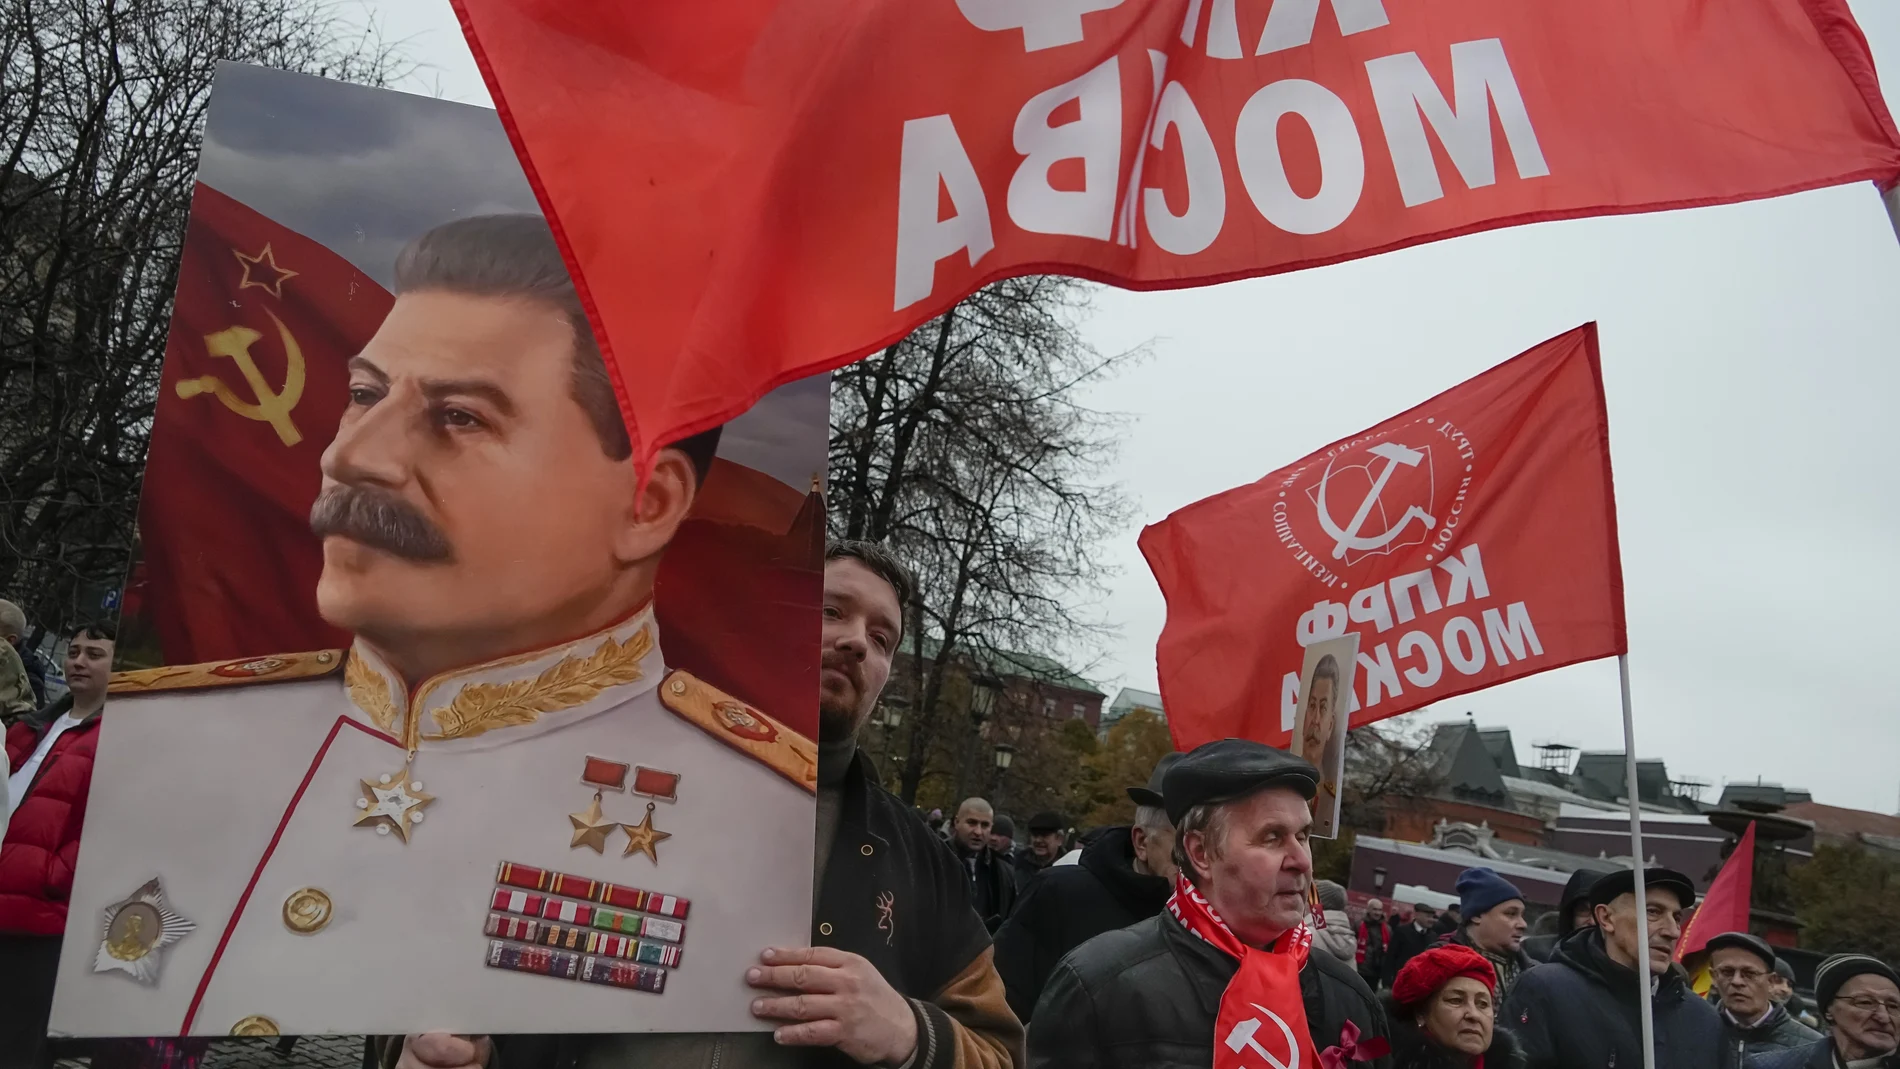 n simpatizante del partido comunista lleva un retrato de Josef Stalin durante una manifestación que conmemora el 105º aniversario de la revolución bolchevique de 1917 cerca de la Plaza Roja, en Moscú, Rusia, este lunes